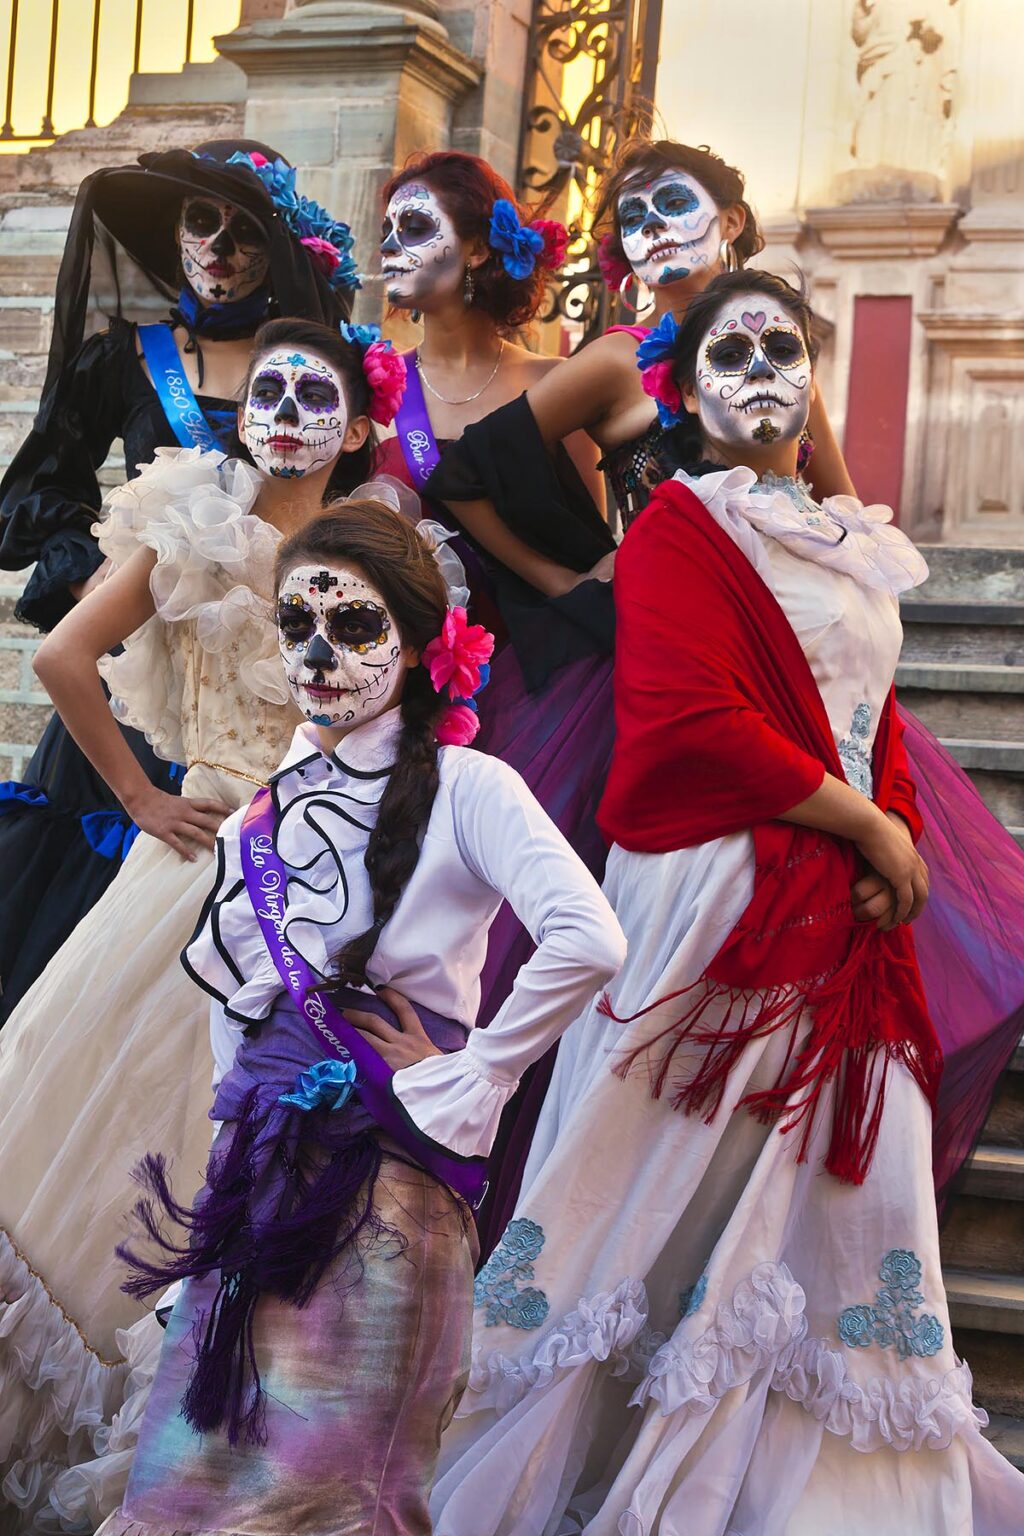 LA CALAVERA CATRINAS or Elegant Skulls, are the icons of the DAY OF THE DEAD - GUANAUATO, MEXICO